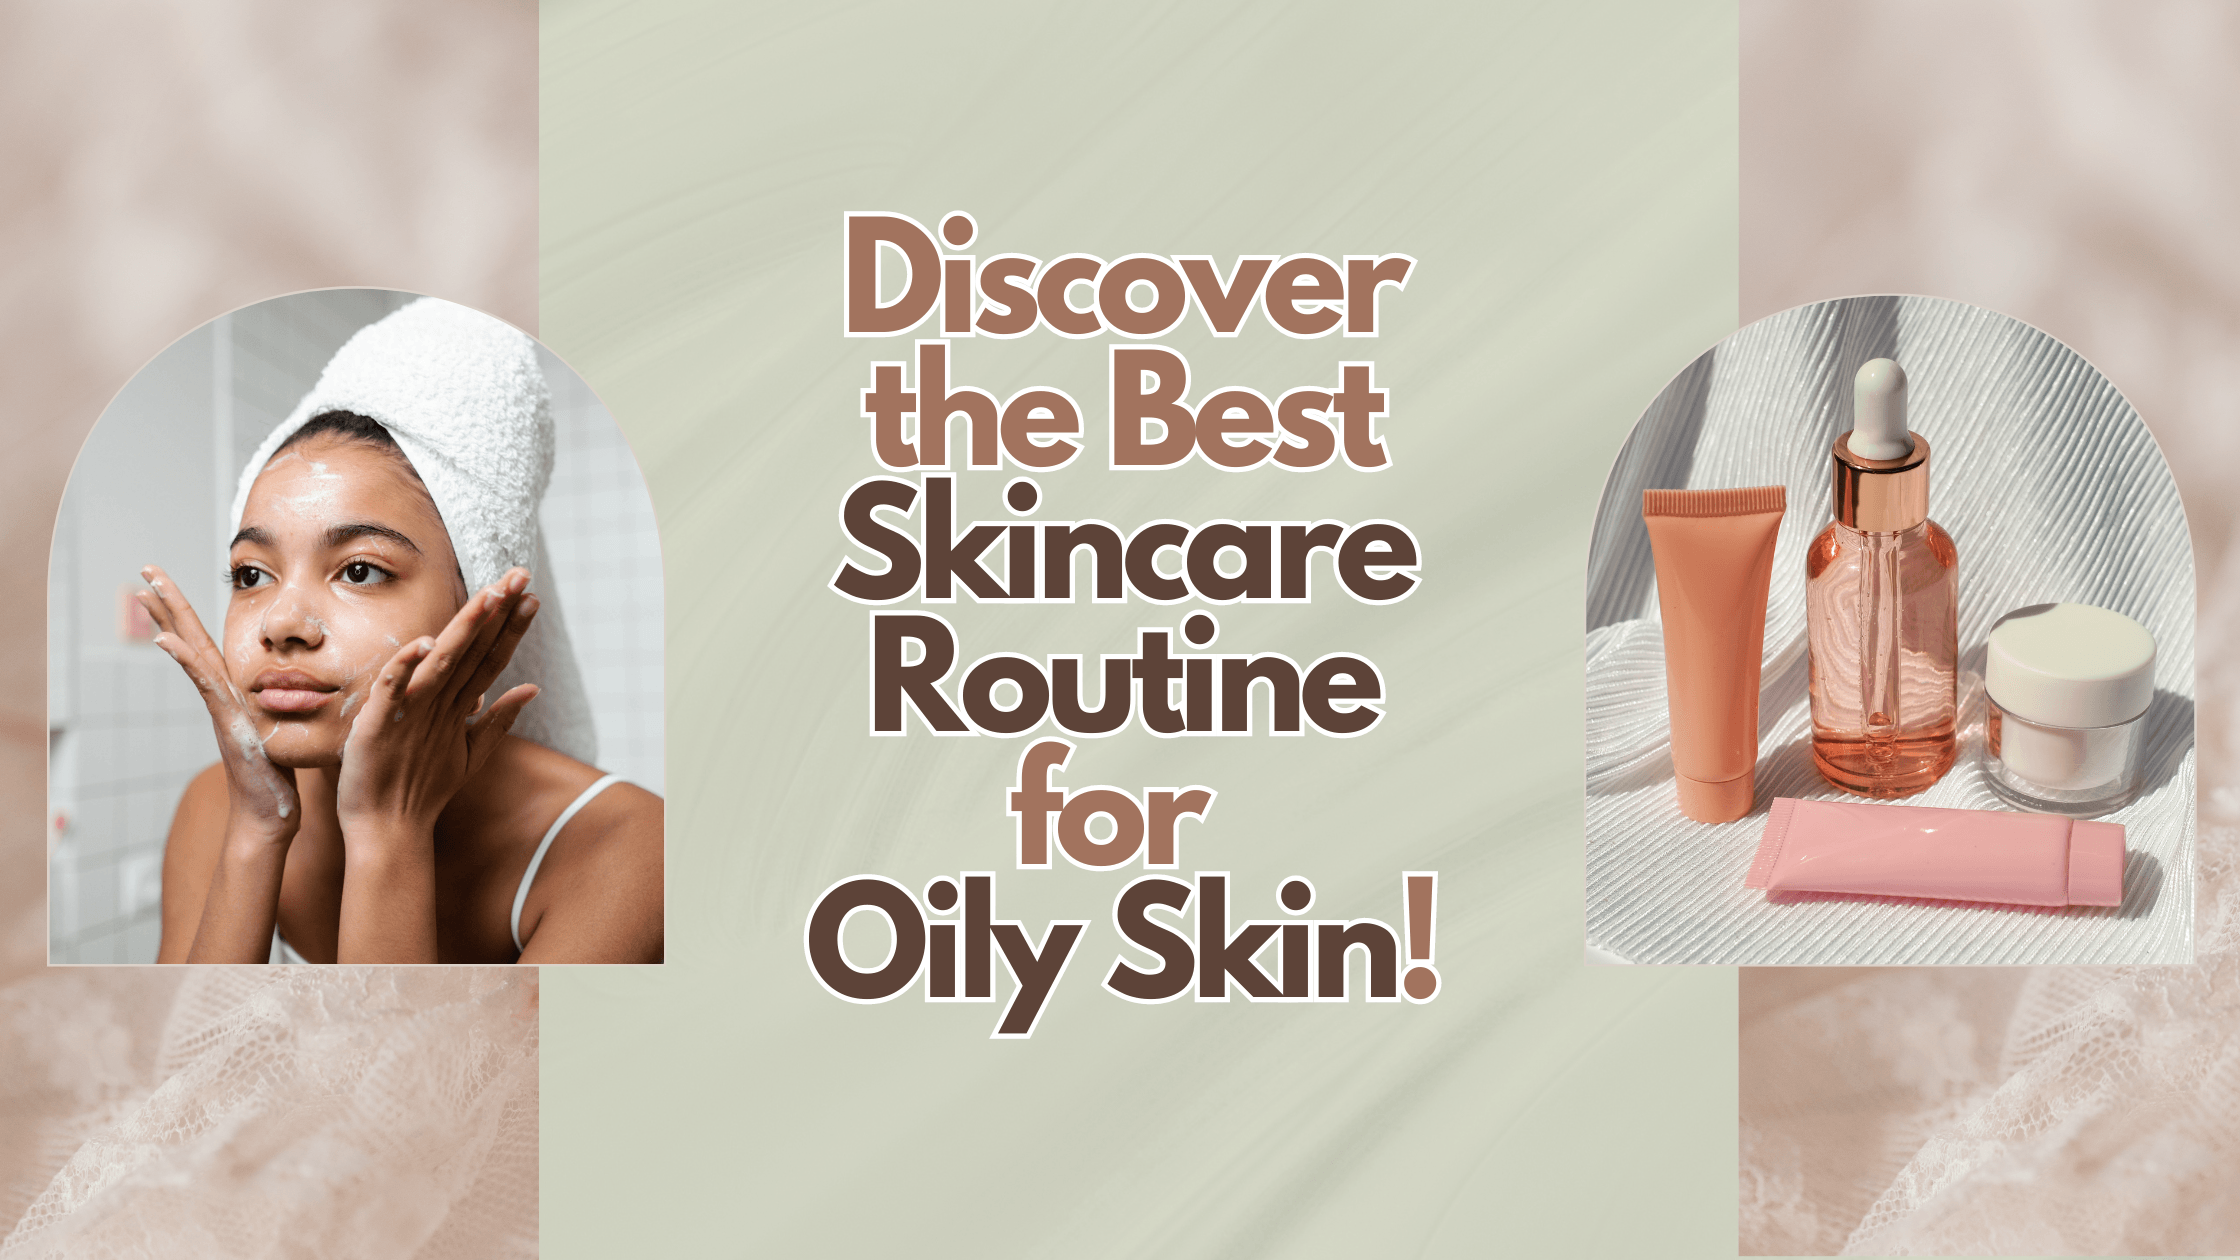 Skincare regime for oily skin